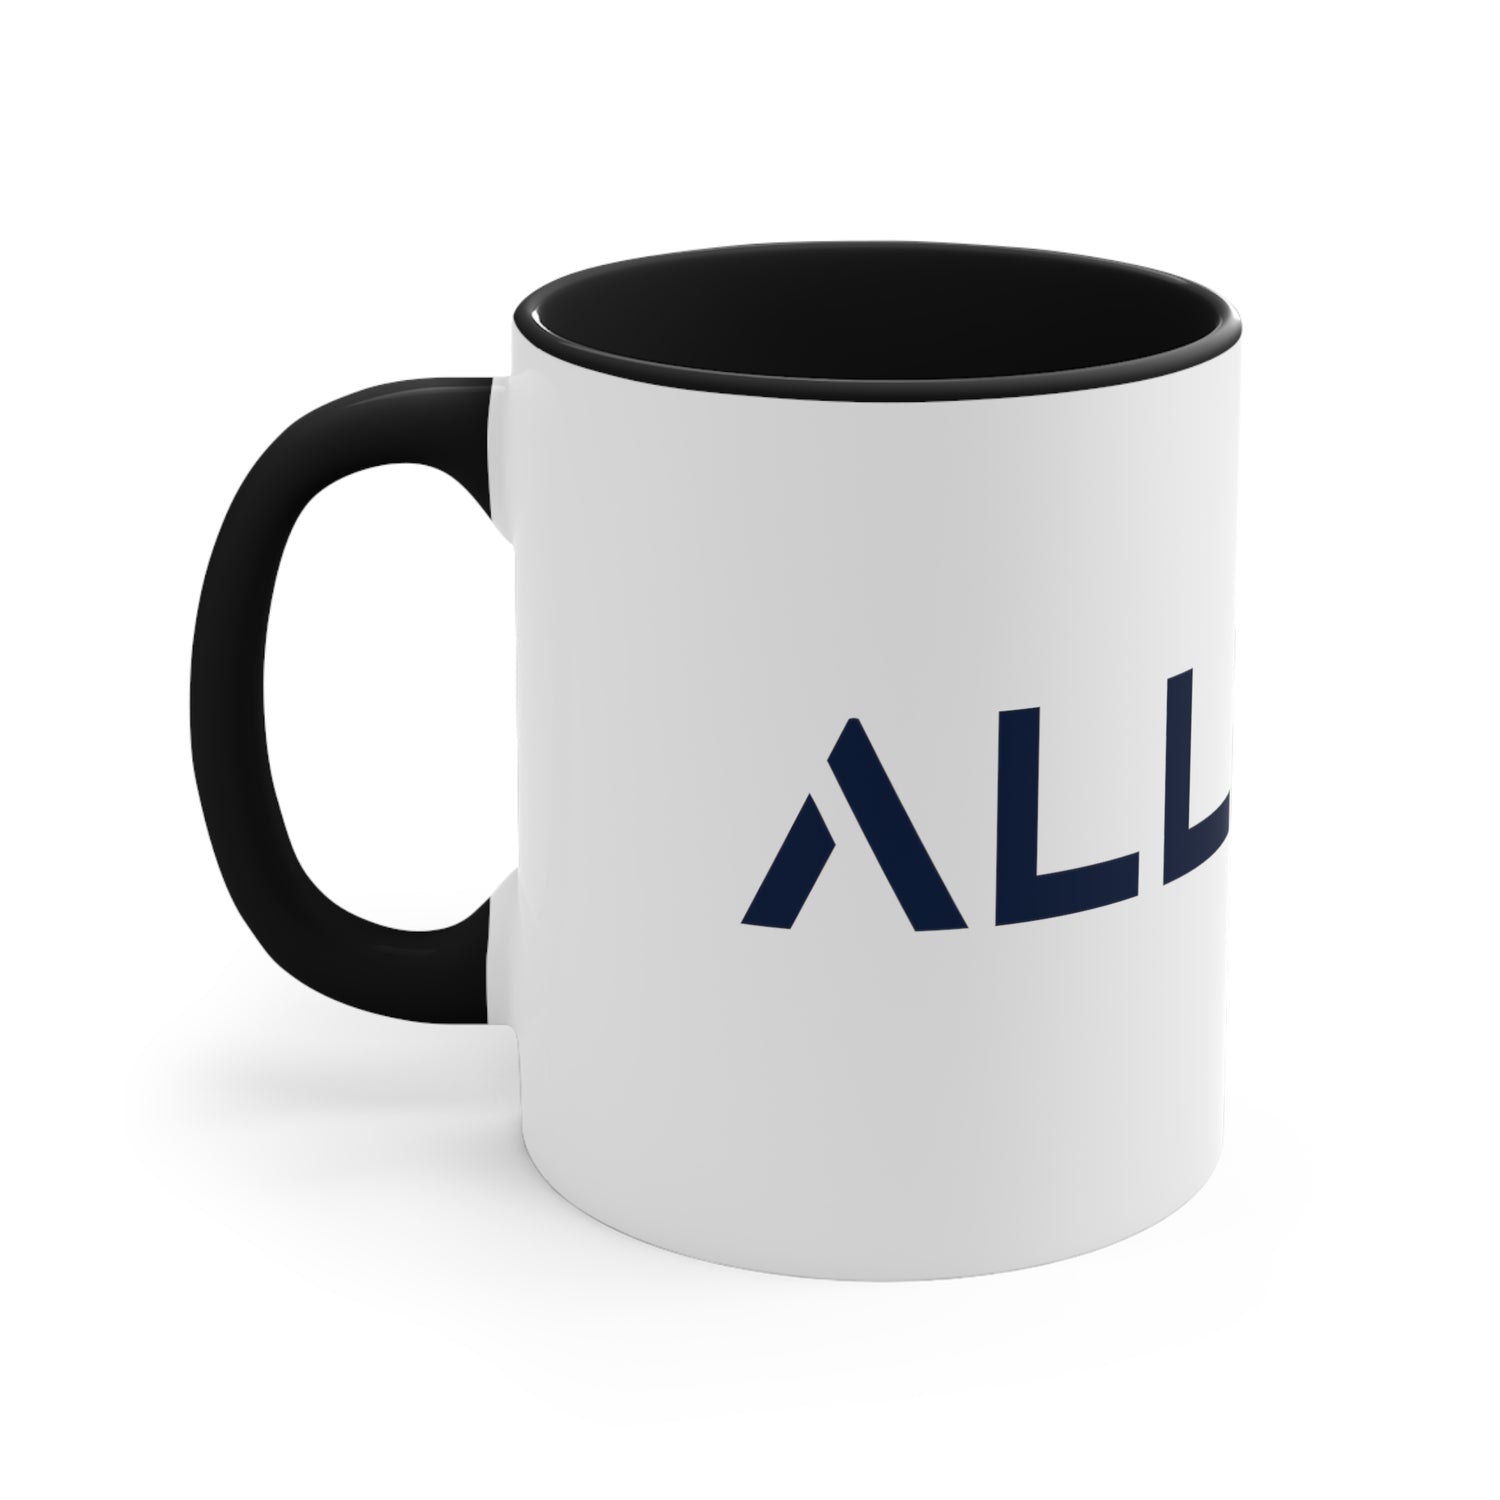 ALLMYNE Accent Coffee Mug, 11oz